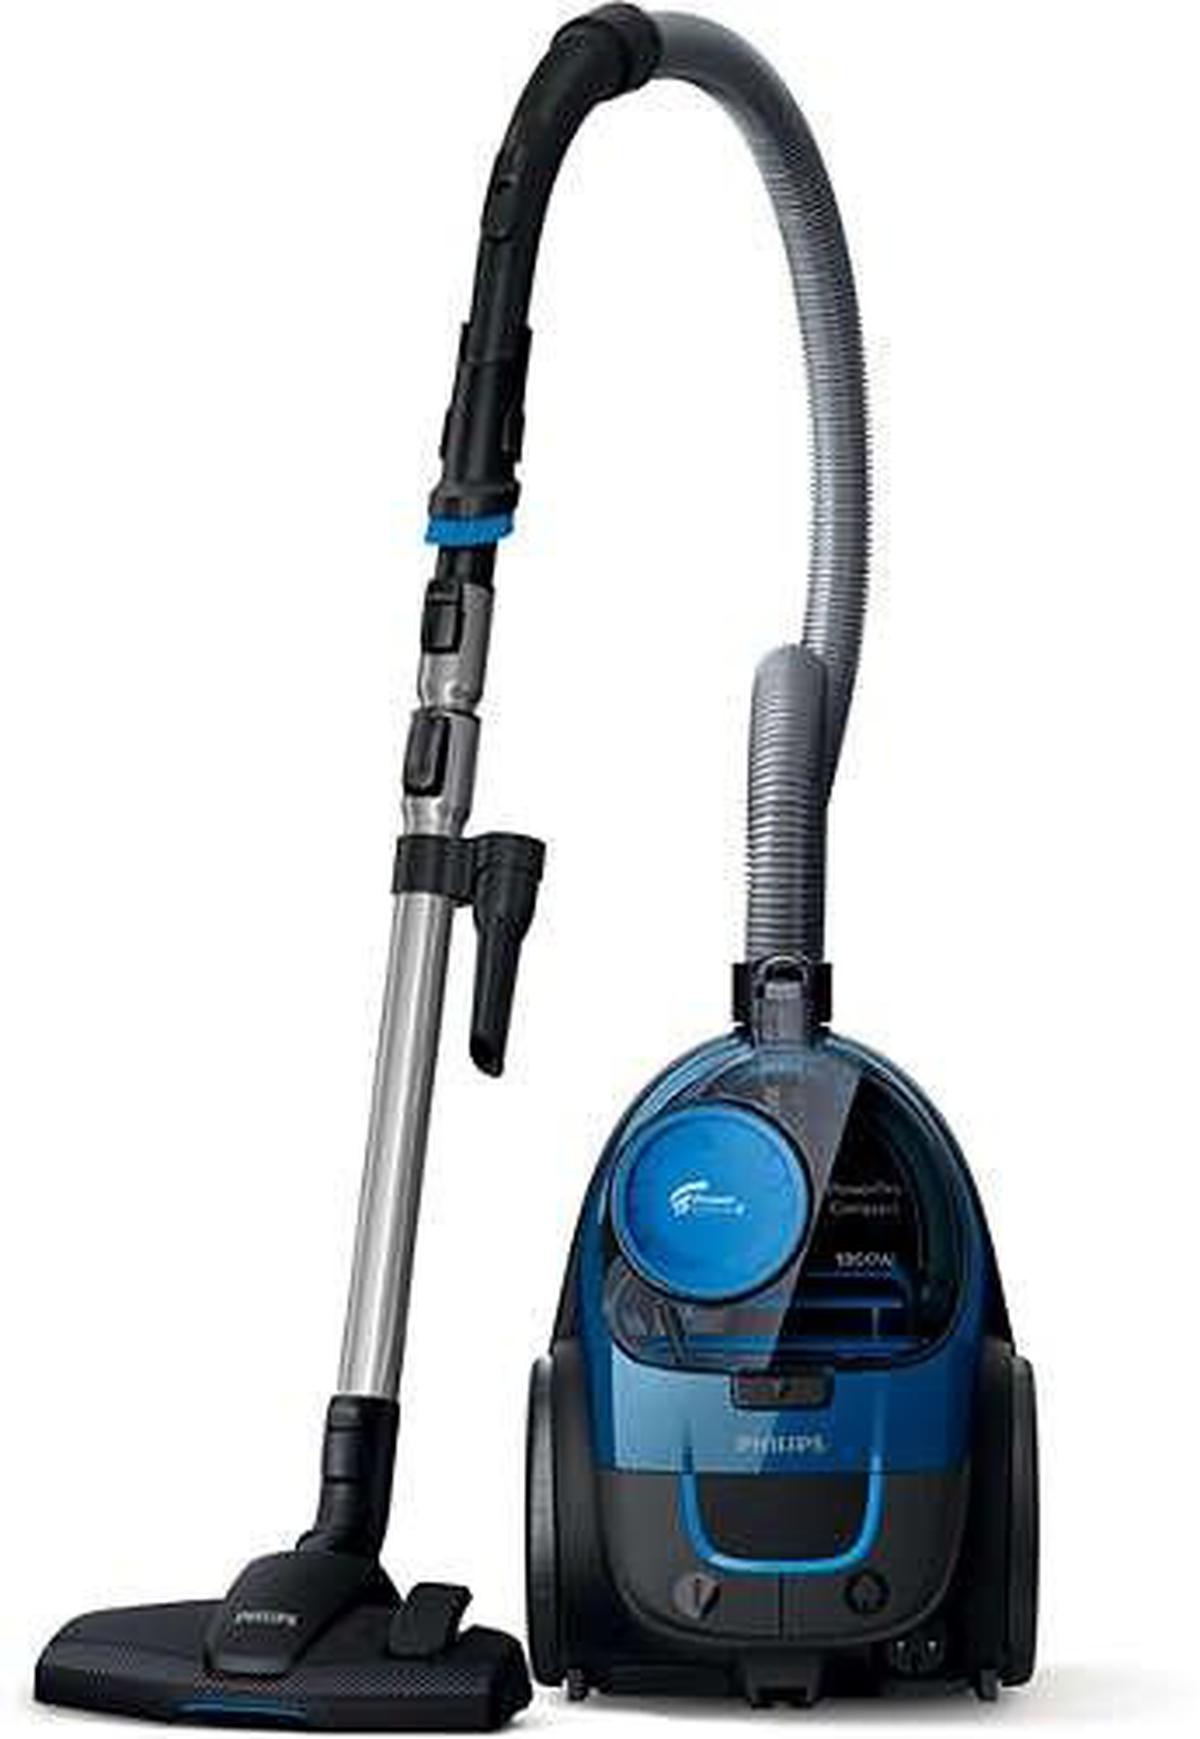 Vacuum Bags in Vacuums, Steamers & Floor Care - Walmart.com